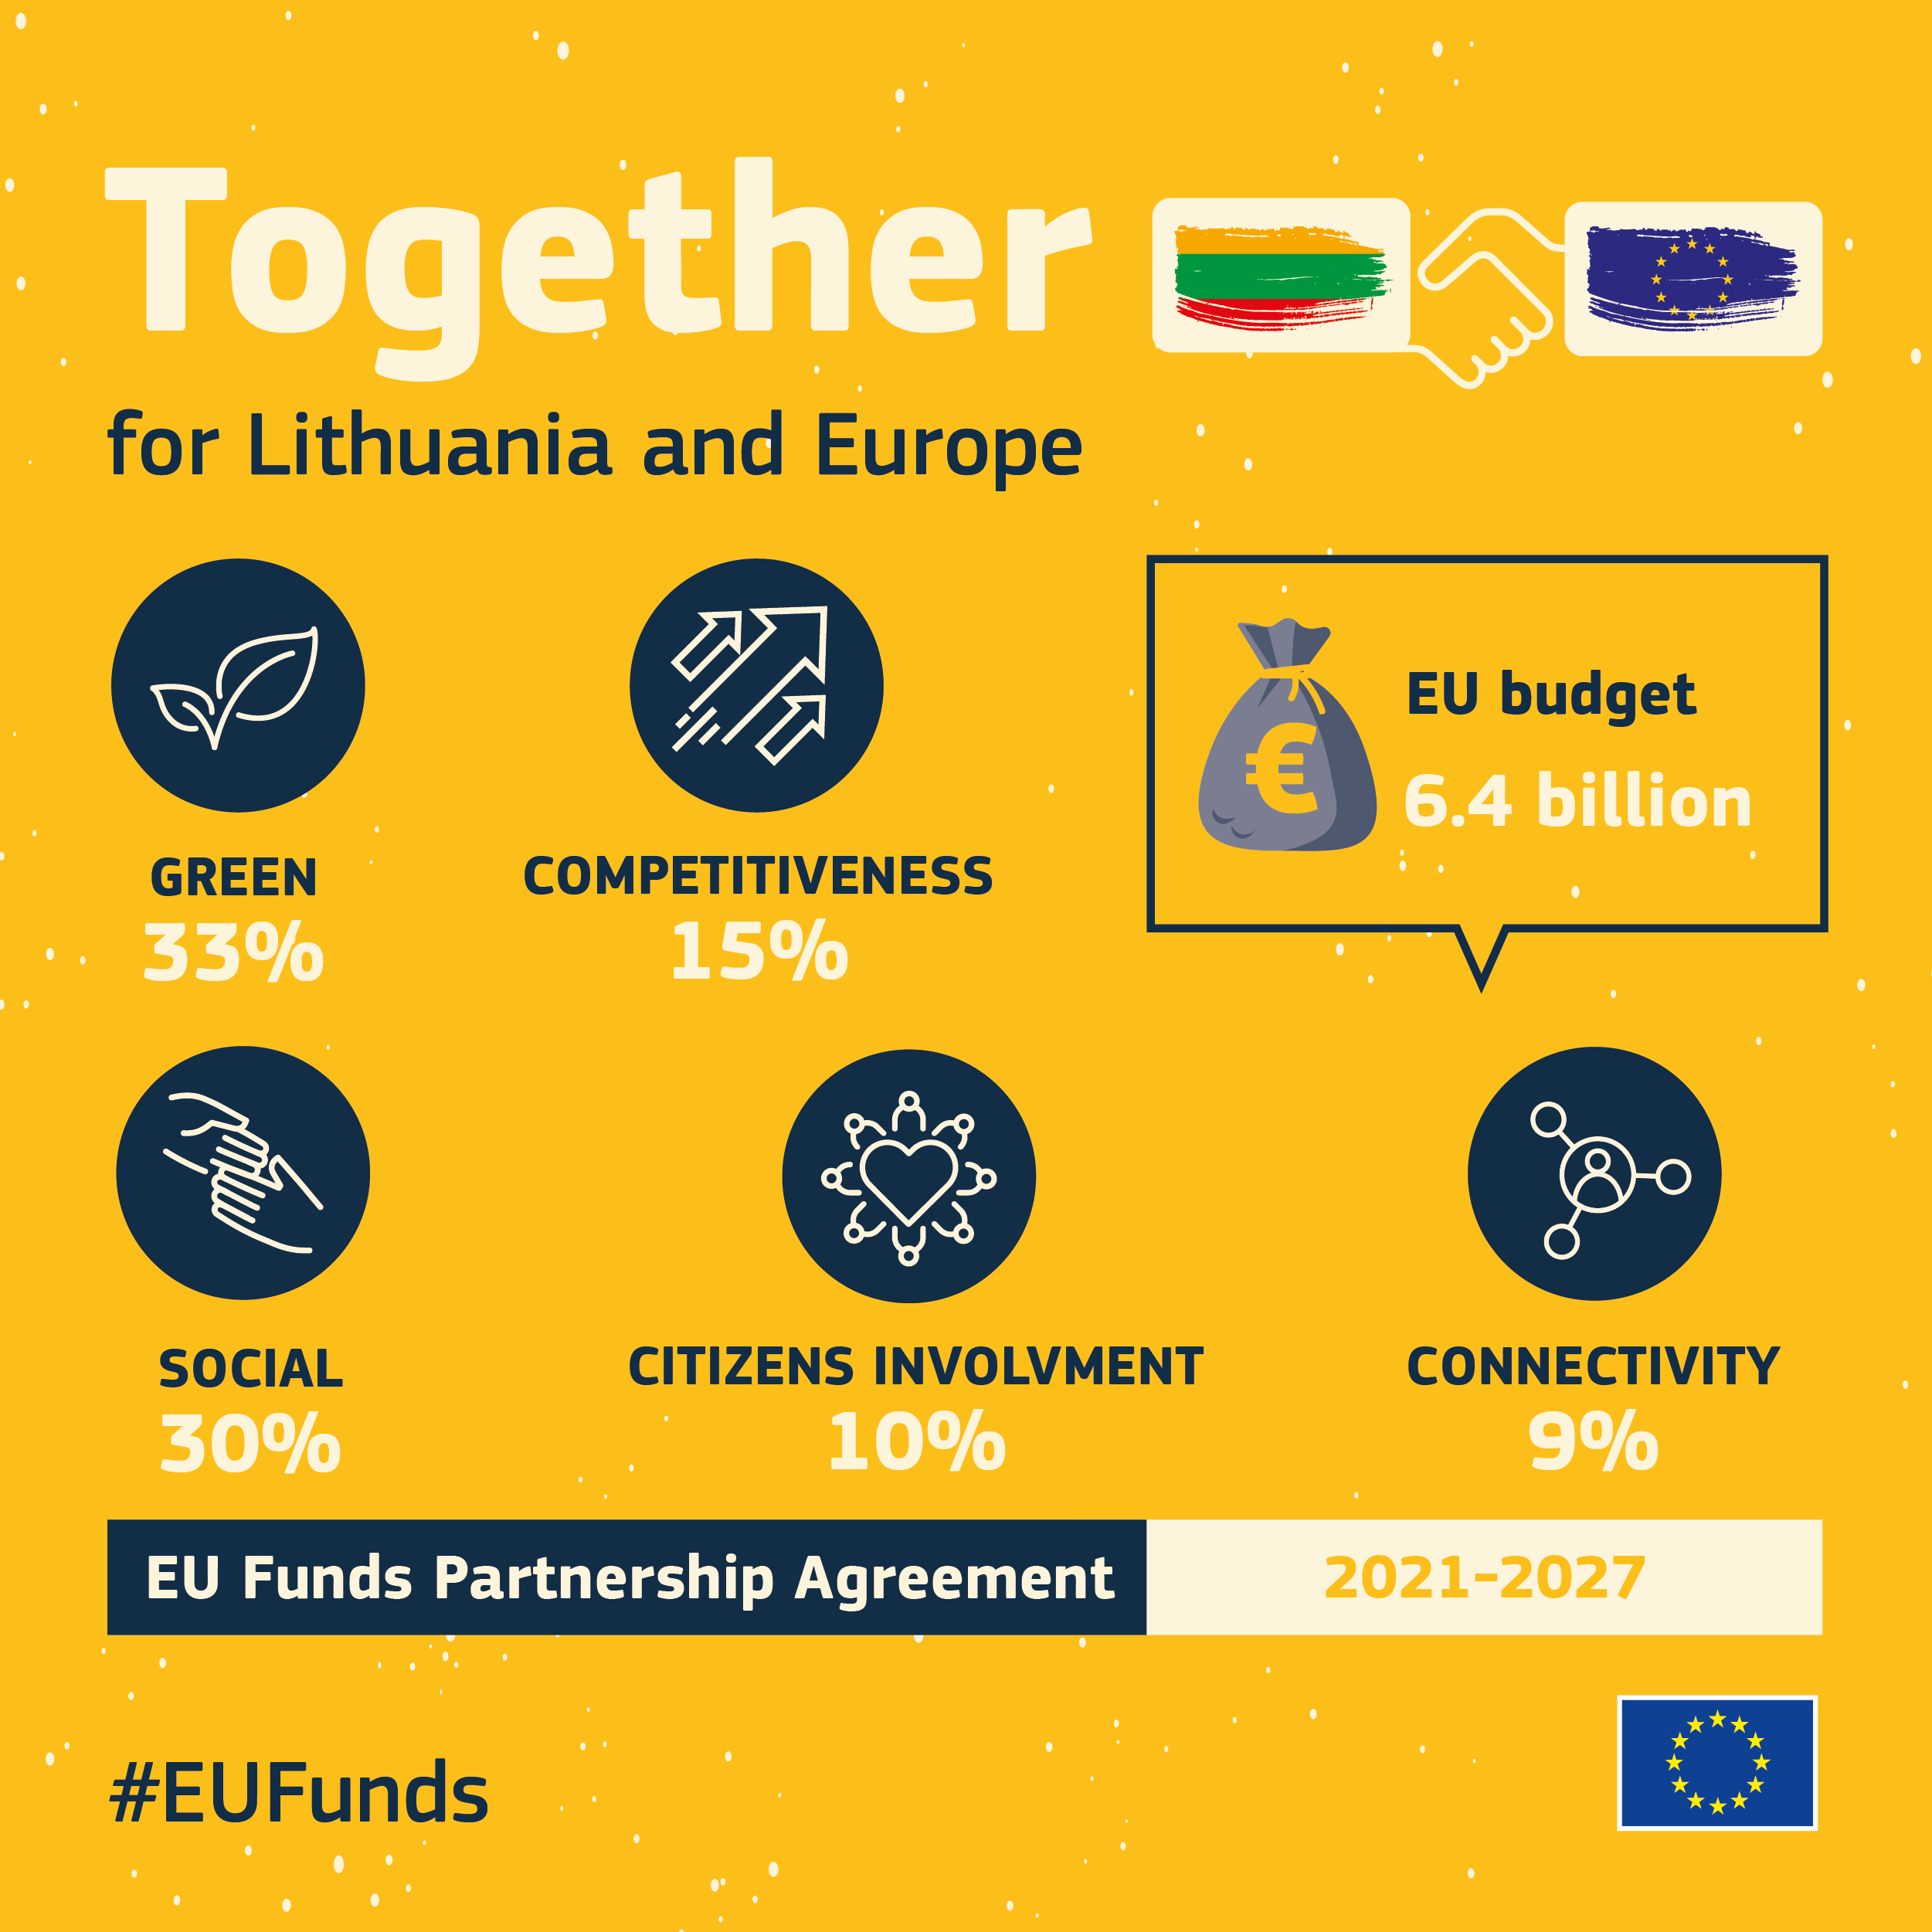 Komisija patvirtino 6,4 mlrd. eurų partnerystės susitarimą su Lietuva 2021–2027 m. – Regioninė politika